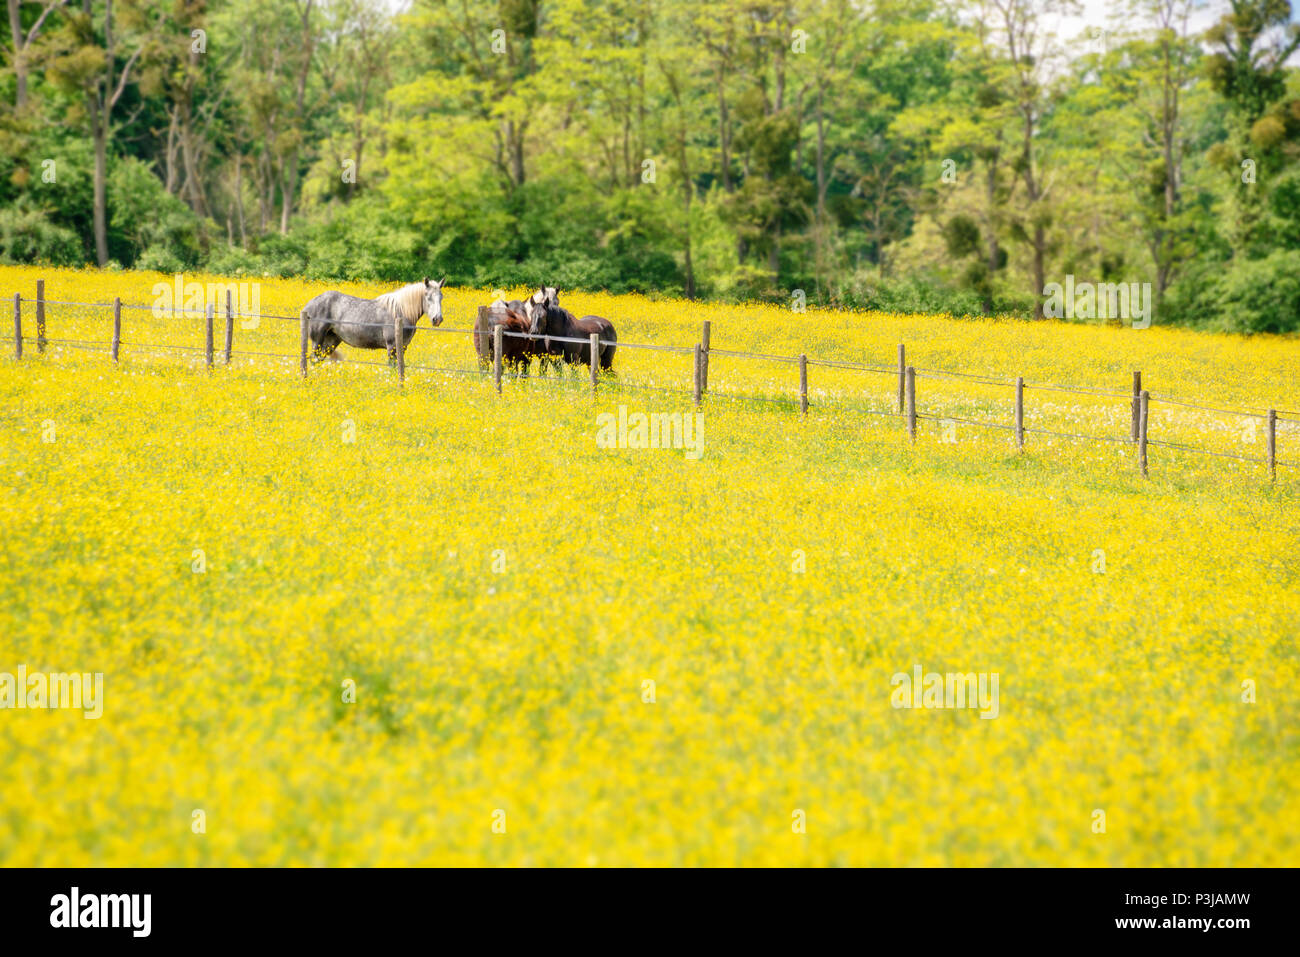 Percherons cavalli in un campo di fiori selvatici giallo in provincia perche, Francia Foto Stock